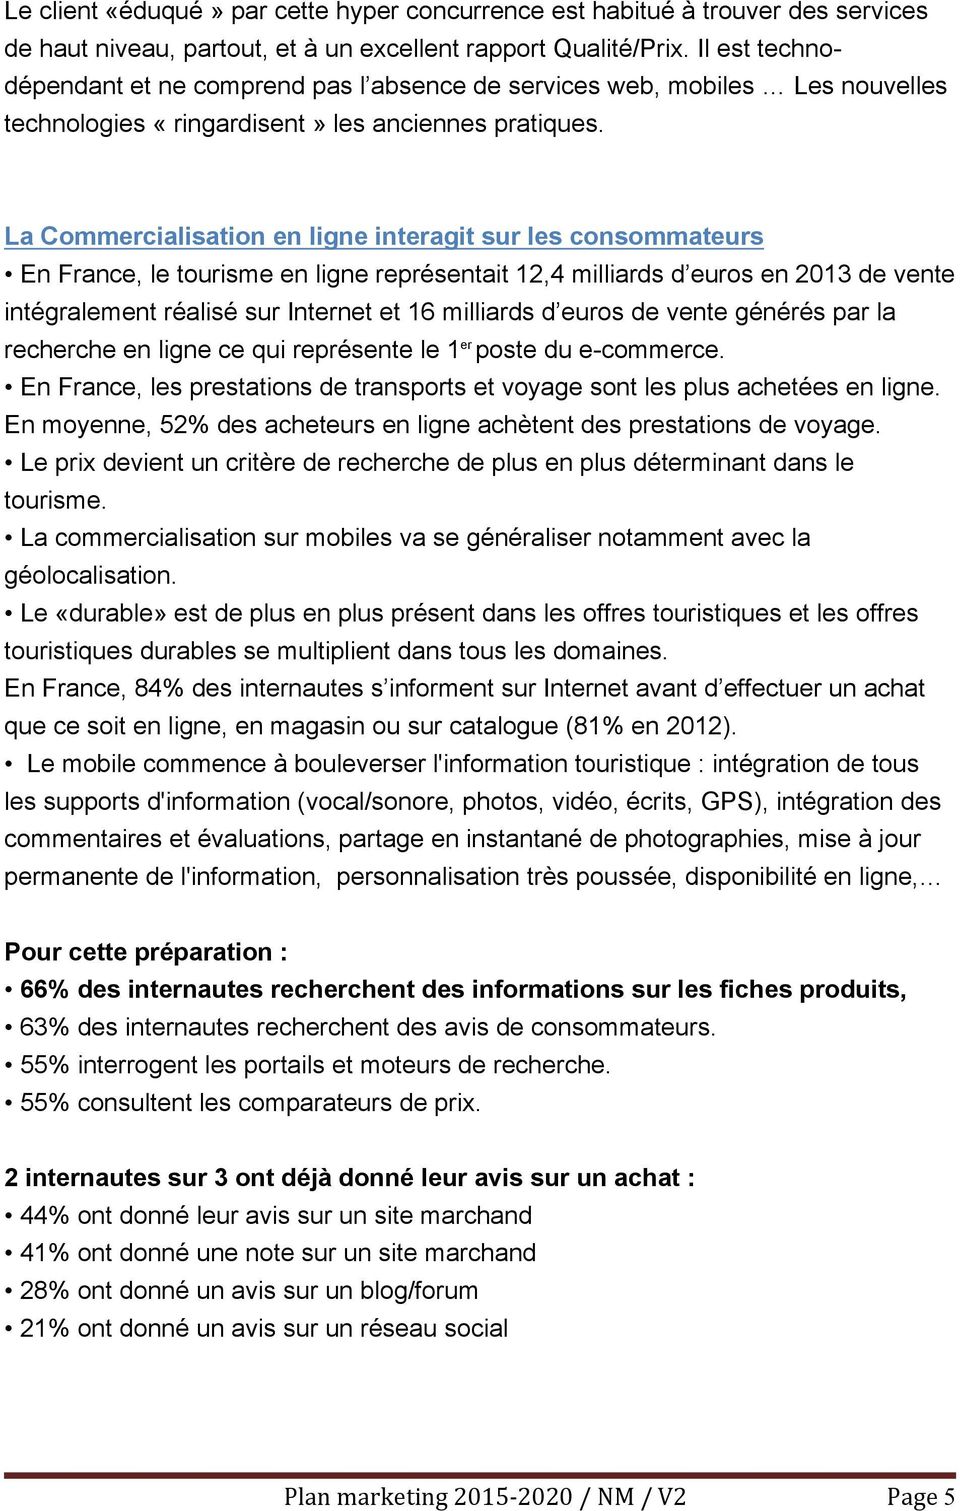 La Commercialisation en ligne interagit sur les consommateurs En France, le tourisme en ligne représentait 12,4 milliards d euros en 2013 de vente intégralement réalisé sur Internet et 16 milliards d